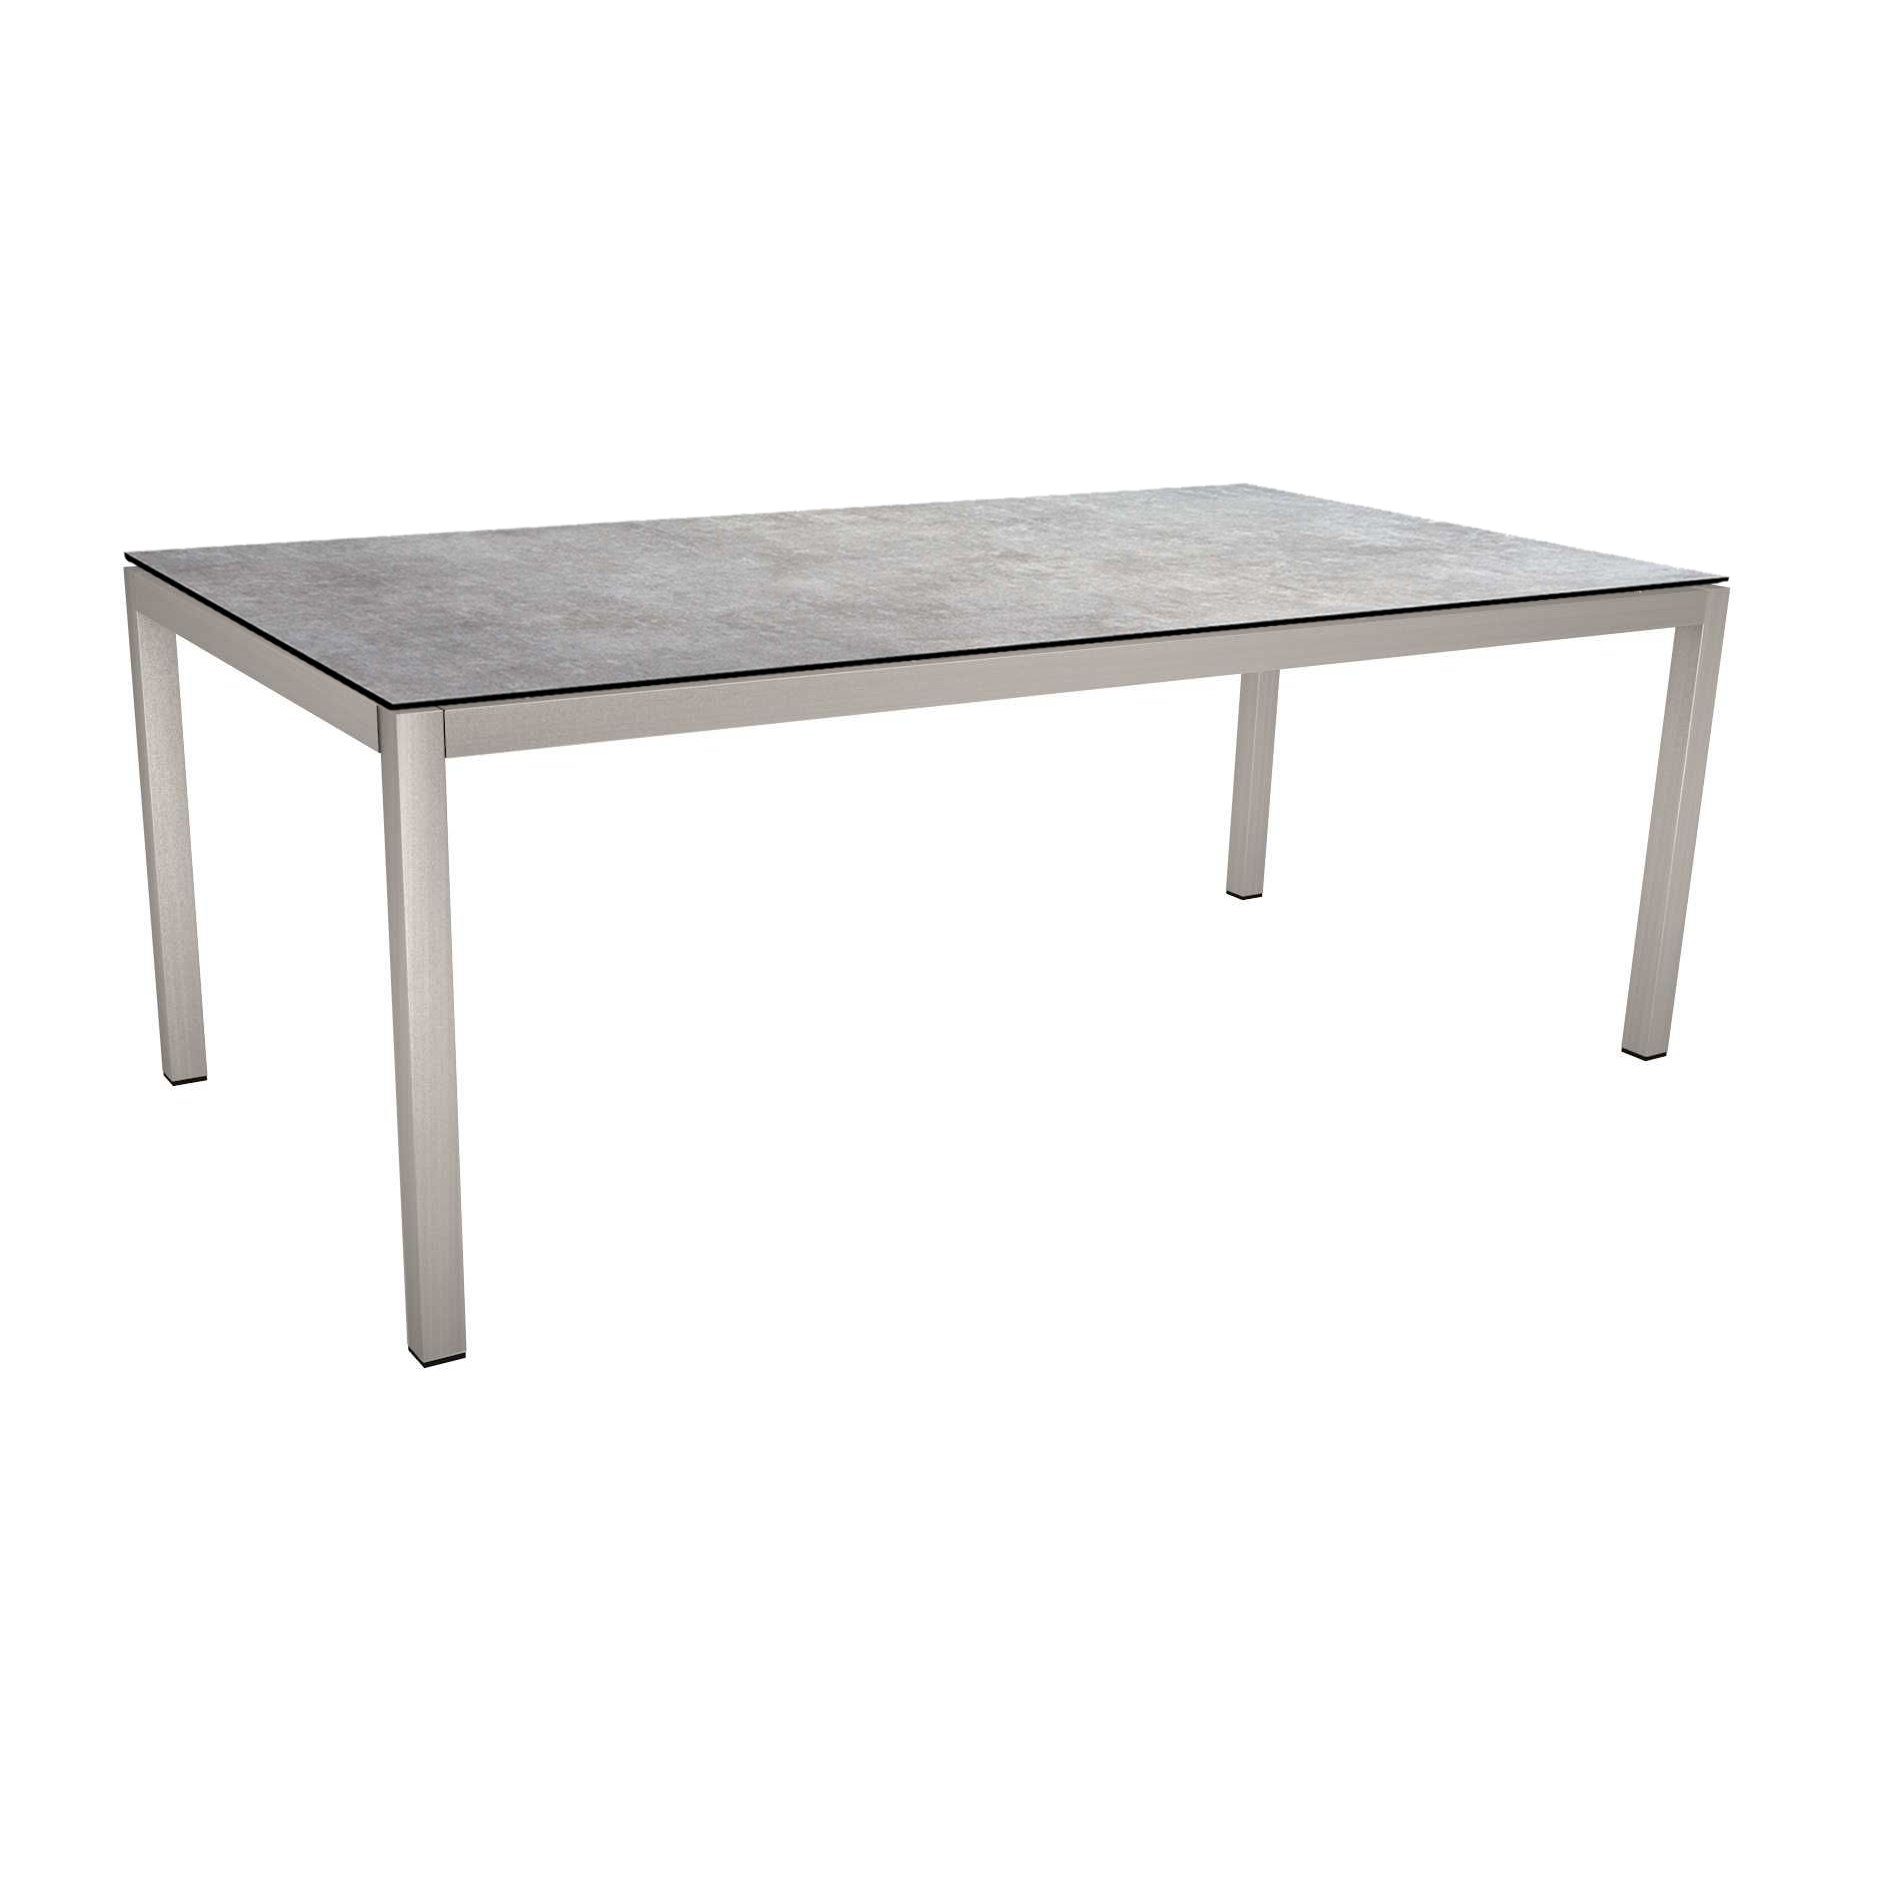 Stern Tischsystem, Gestell Edelstahl Vierkantrohr, Tischplatte HPL Metallic grau, 200x100 cm